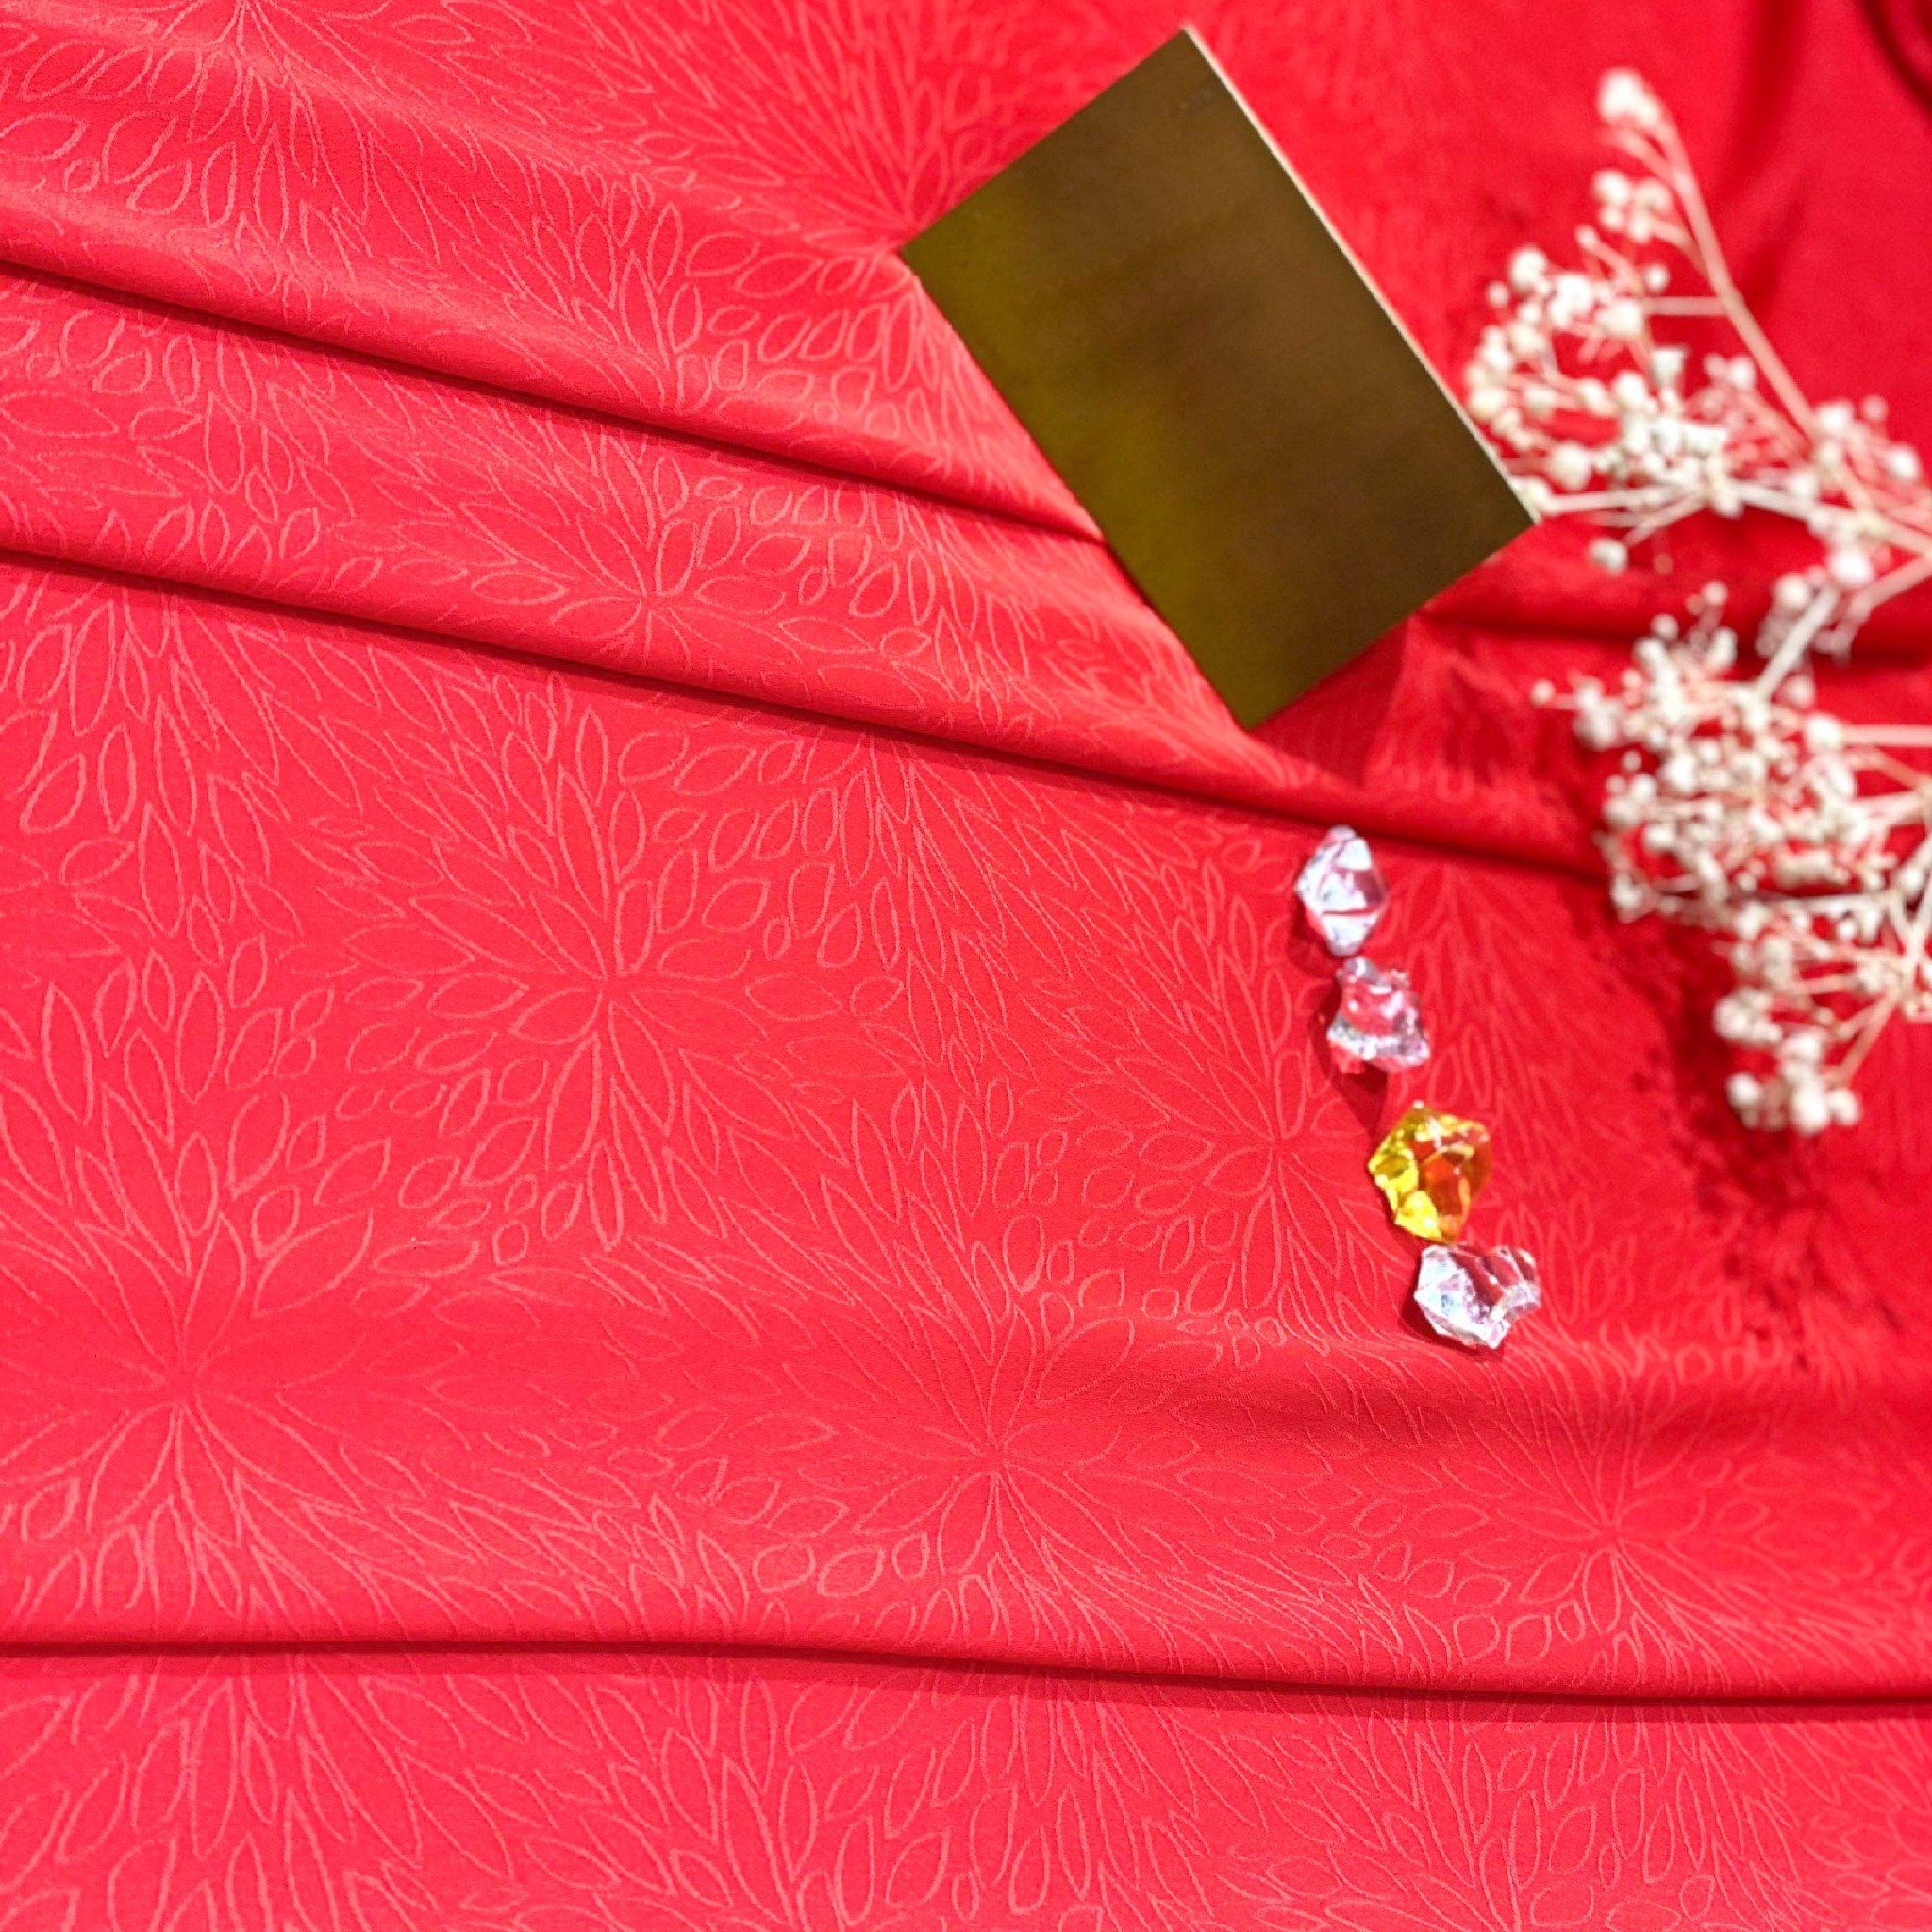 EBSN001041 Vải Gấm Hoa Văn Co Giãn Màu Đỏ